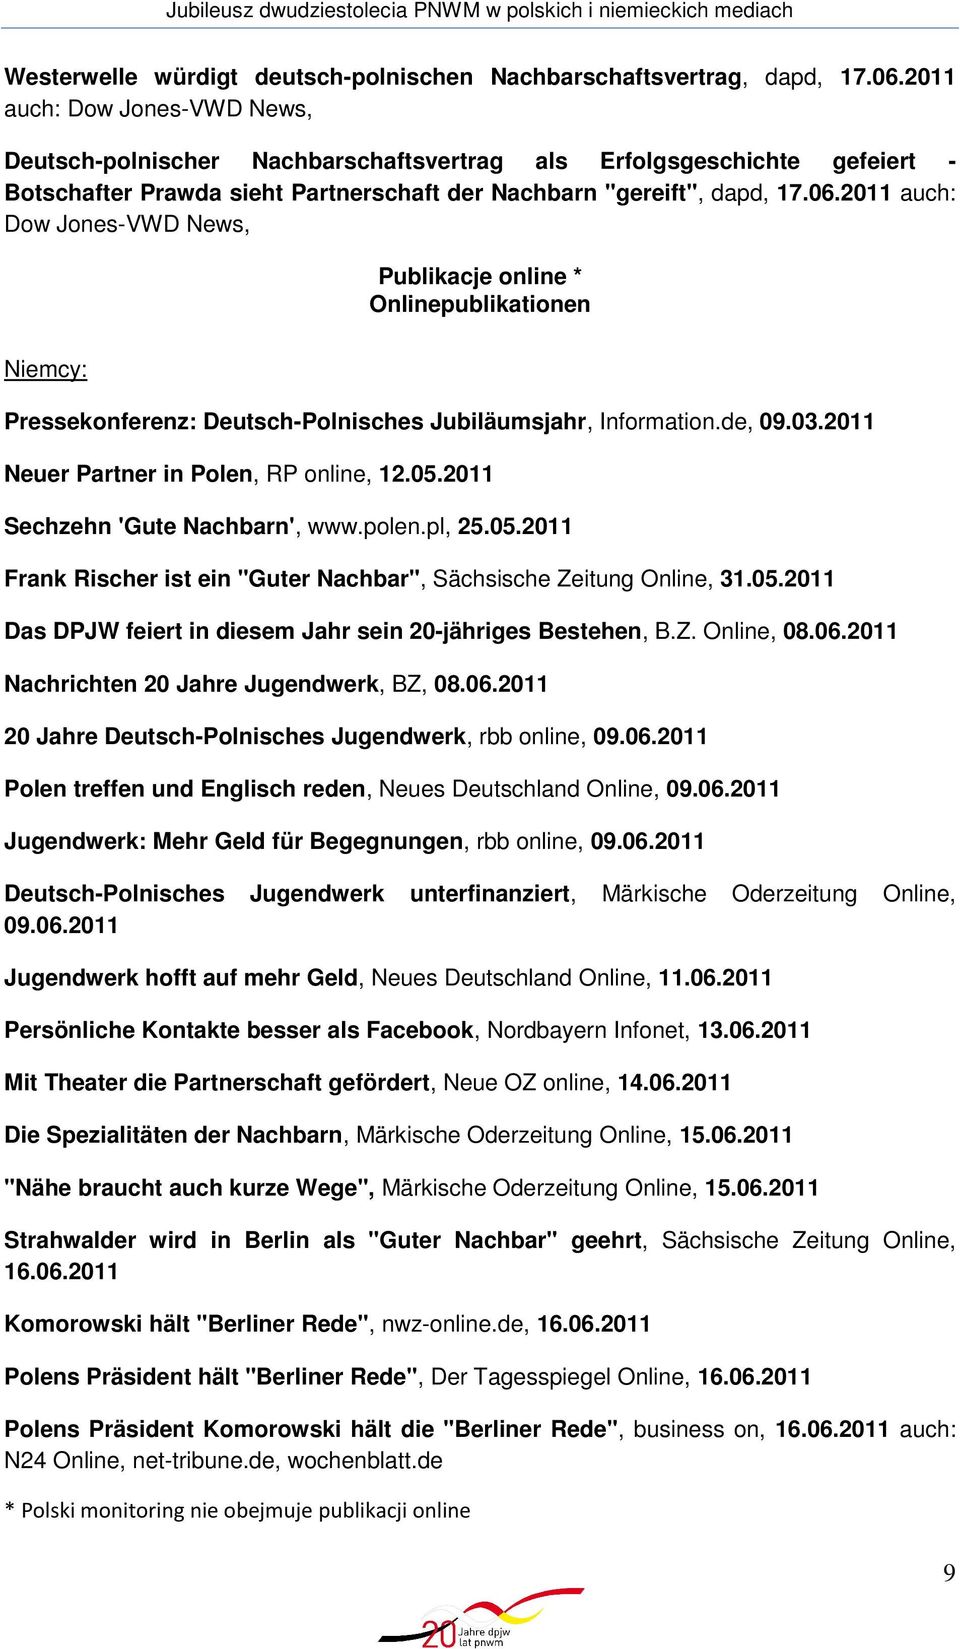 2011 auch: Dow Jones-VWD News, Publikacje online * Onlinepublikationen Niemcy: Pressekonferenz: Deutsch-Polnisches Jubiläumsjahr, Information.de, 09.03.2011 Neuer Partner in Polen, RP online, 12.05.